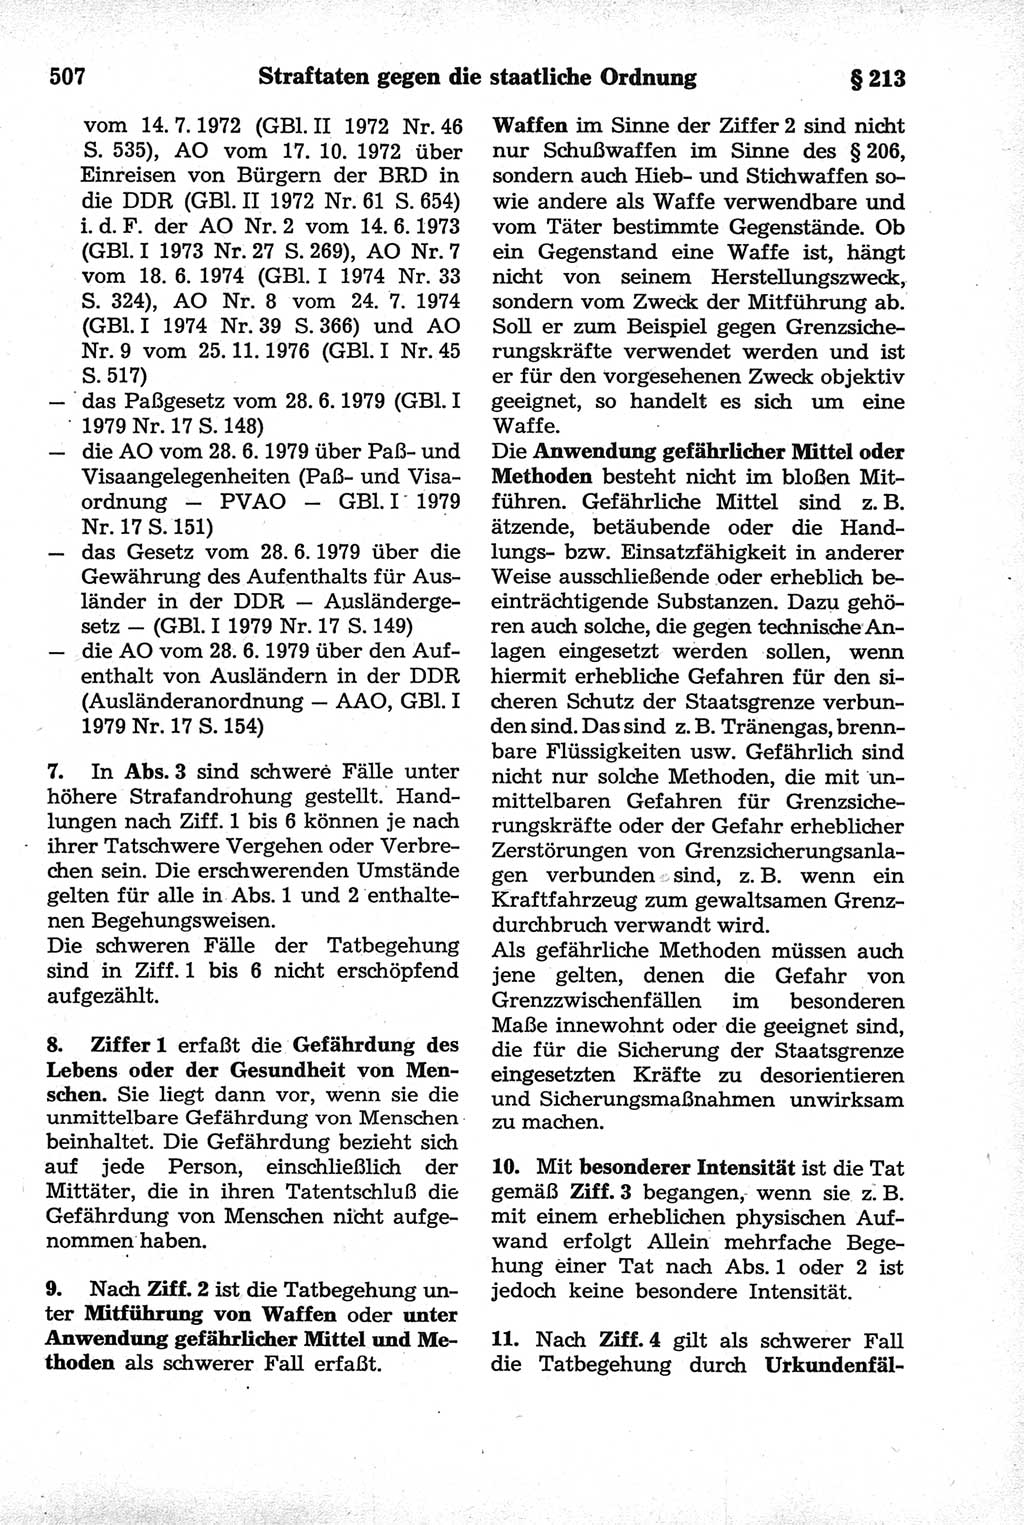 Strafrecht der Deutschen Demokratischen Republik (DDR), Kommentar zum Strafgesetzbuch (StGB) 1981, Seite 507 (Strafr. DDR Komm. StGB 1981, S. 507)